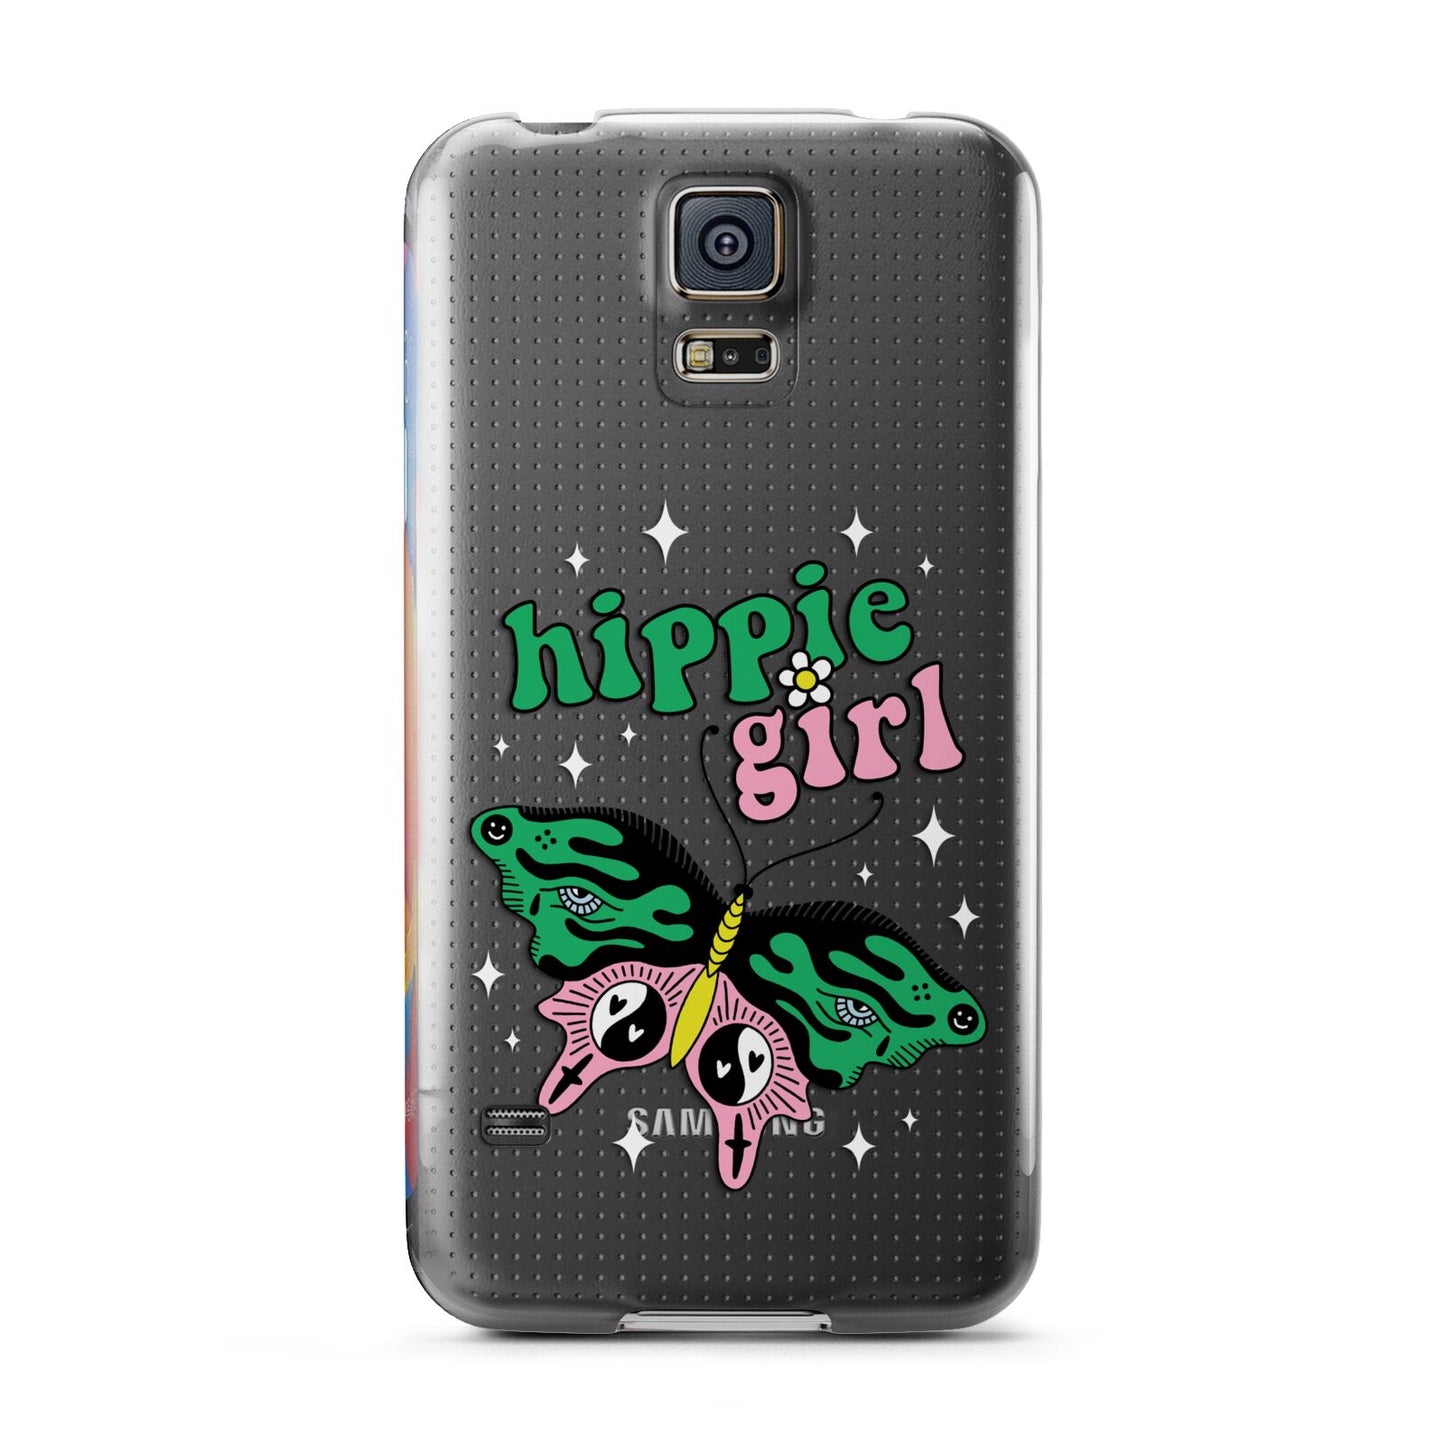 Hippie Girl Samsung Galaxy S5 Case